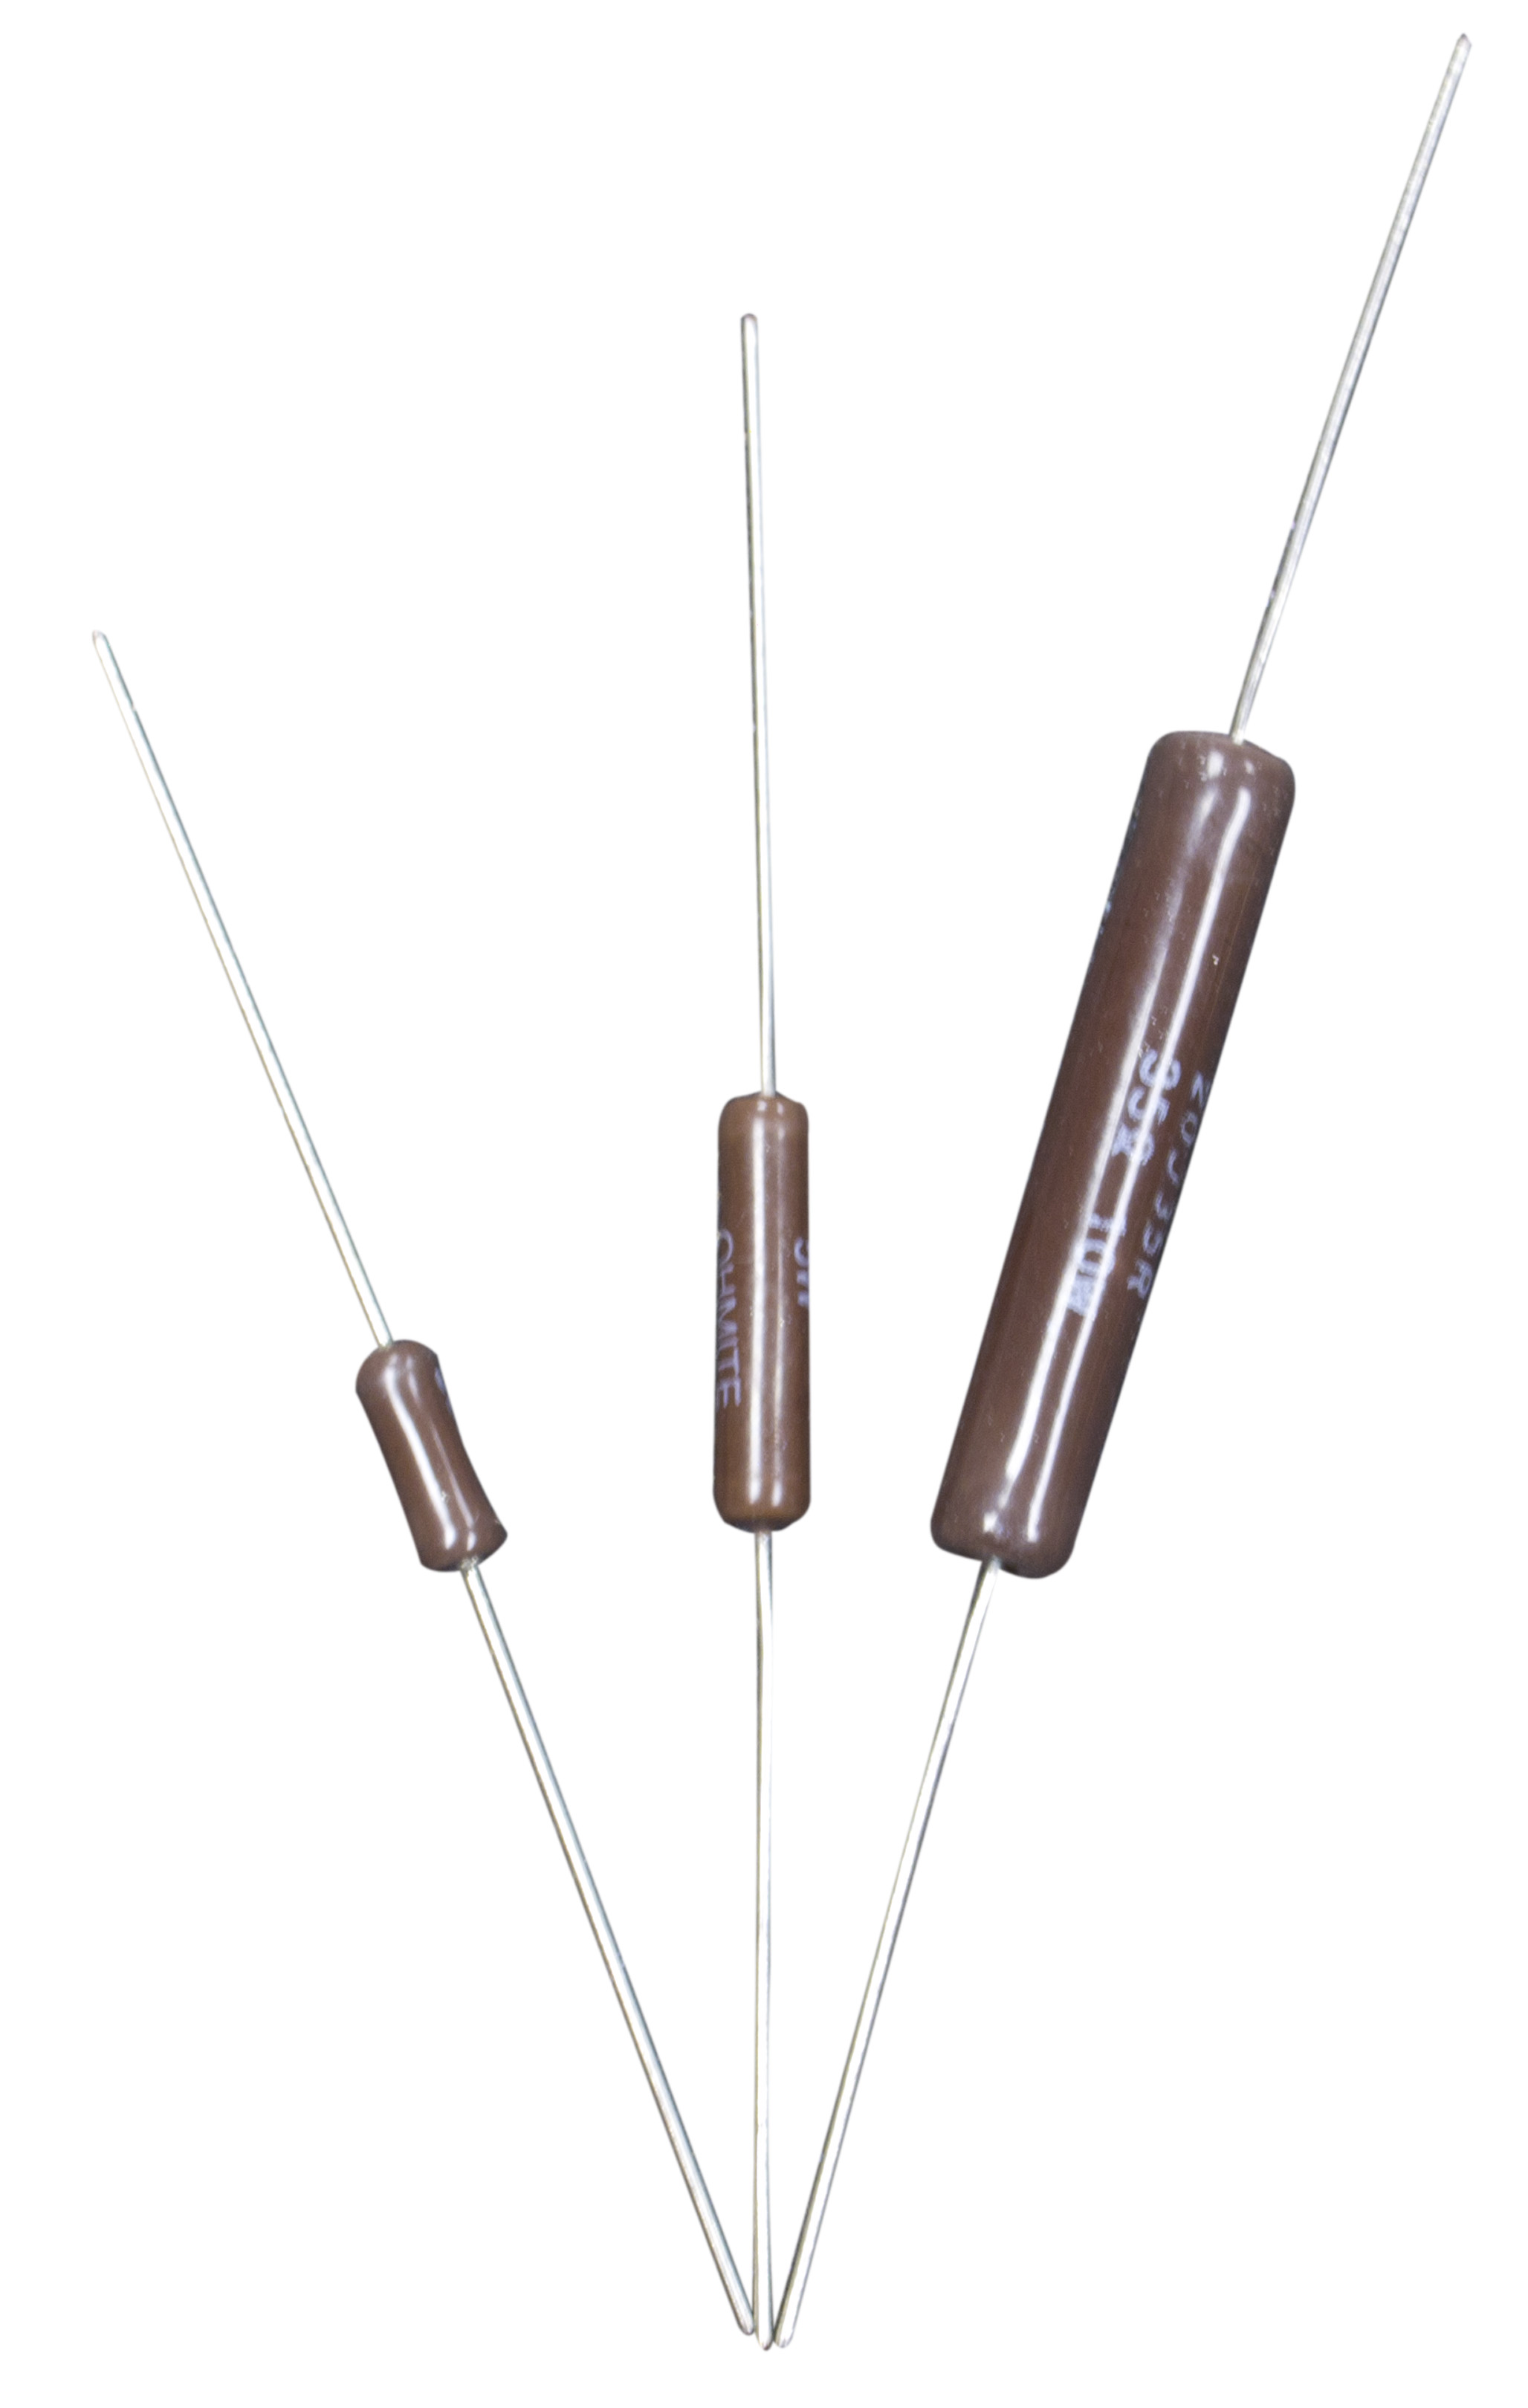 Wire Wound Resistor - Wirewound Power Resistor | Ohmite Mfg Co